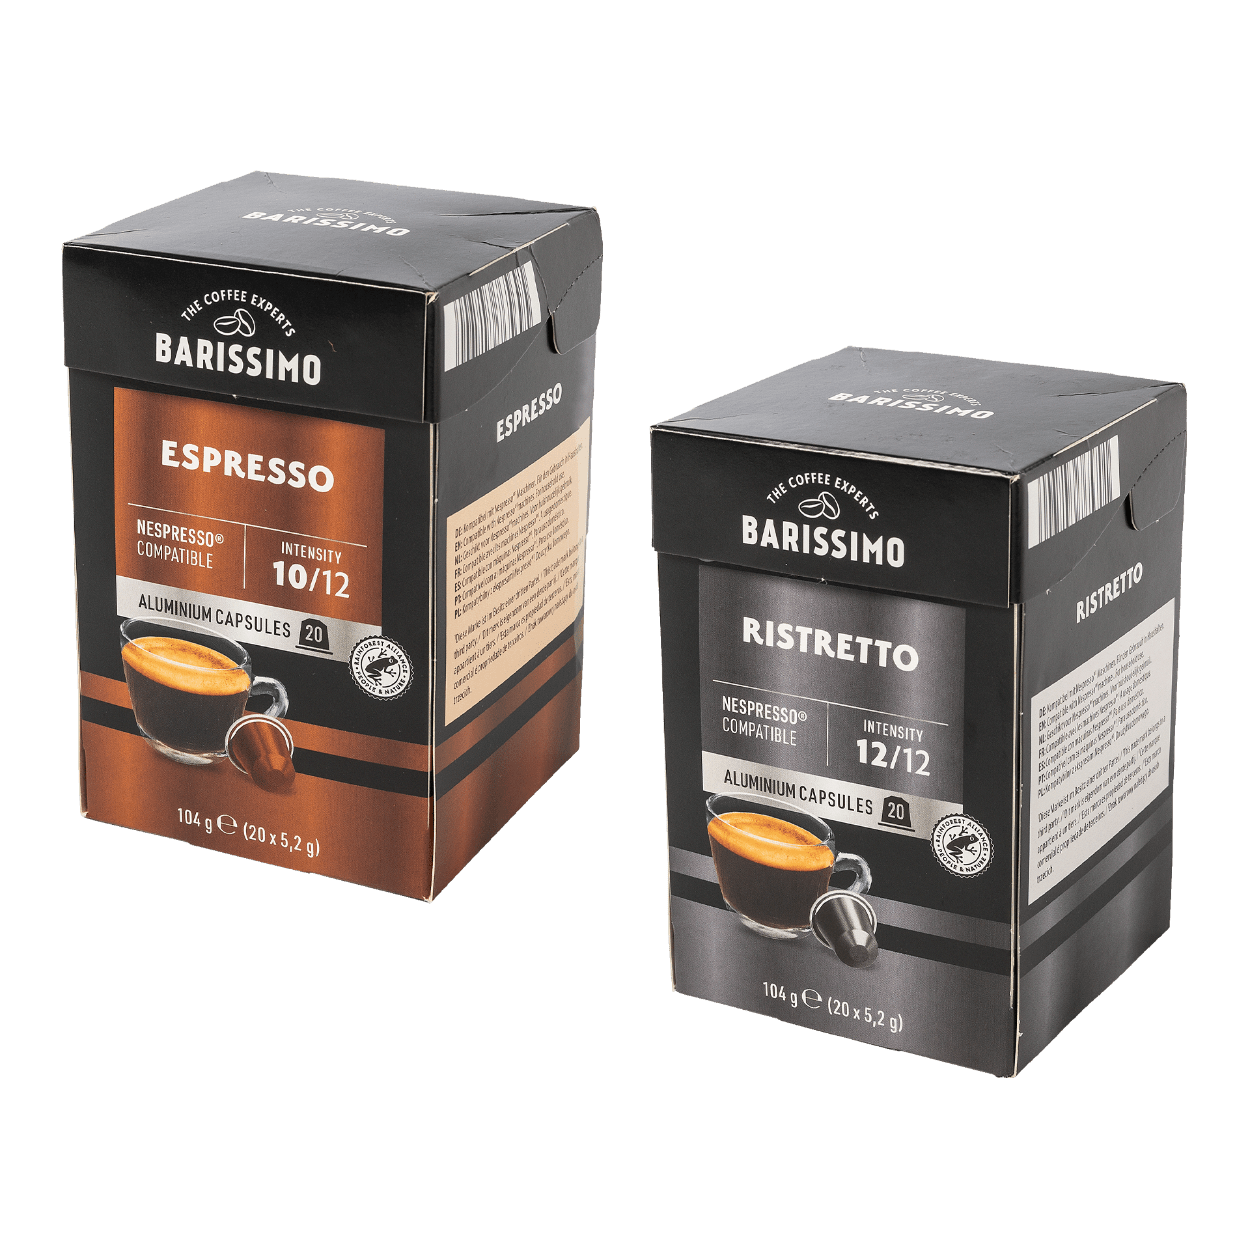 Capsules de café L'Or Espresso Ristretto - Boîte de 40 sur